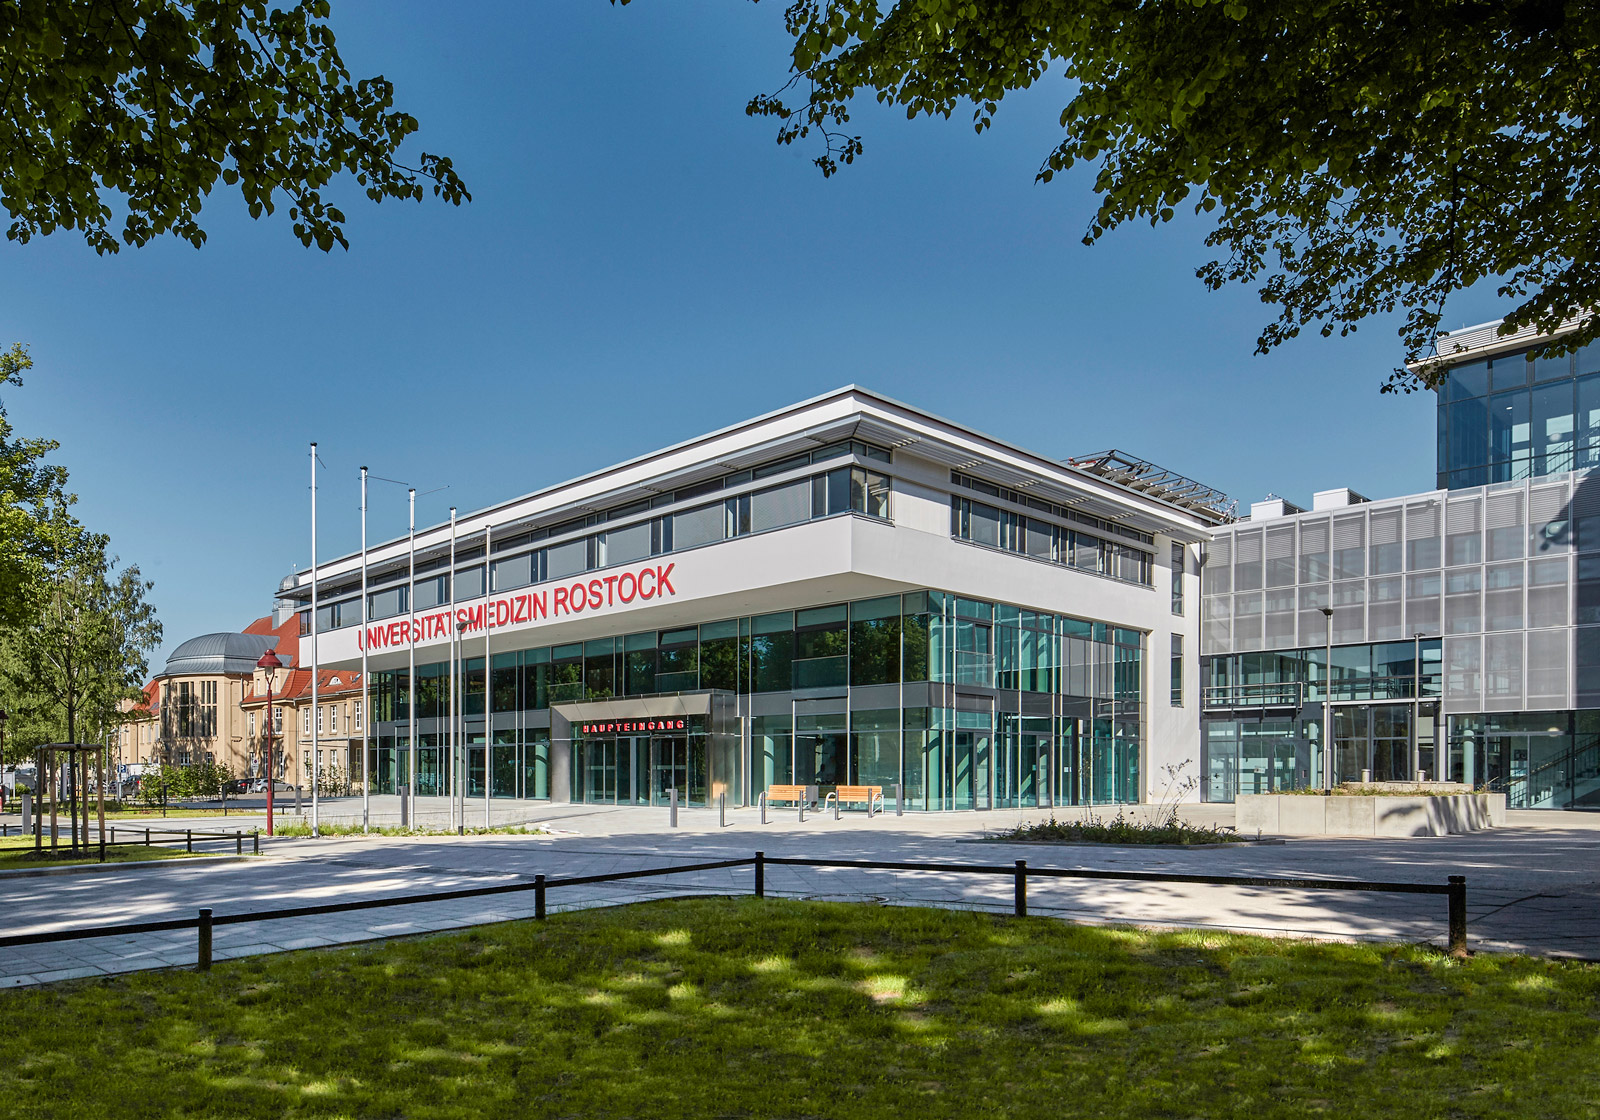 Cjelovita zdravstvena usluga, Sveučilišni medicinski centar Rostock, DE